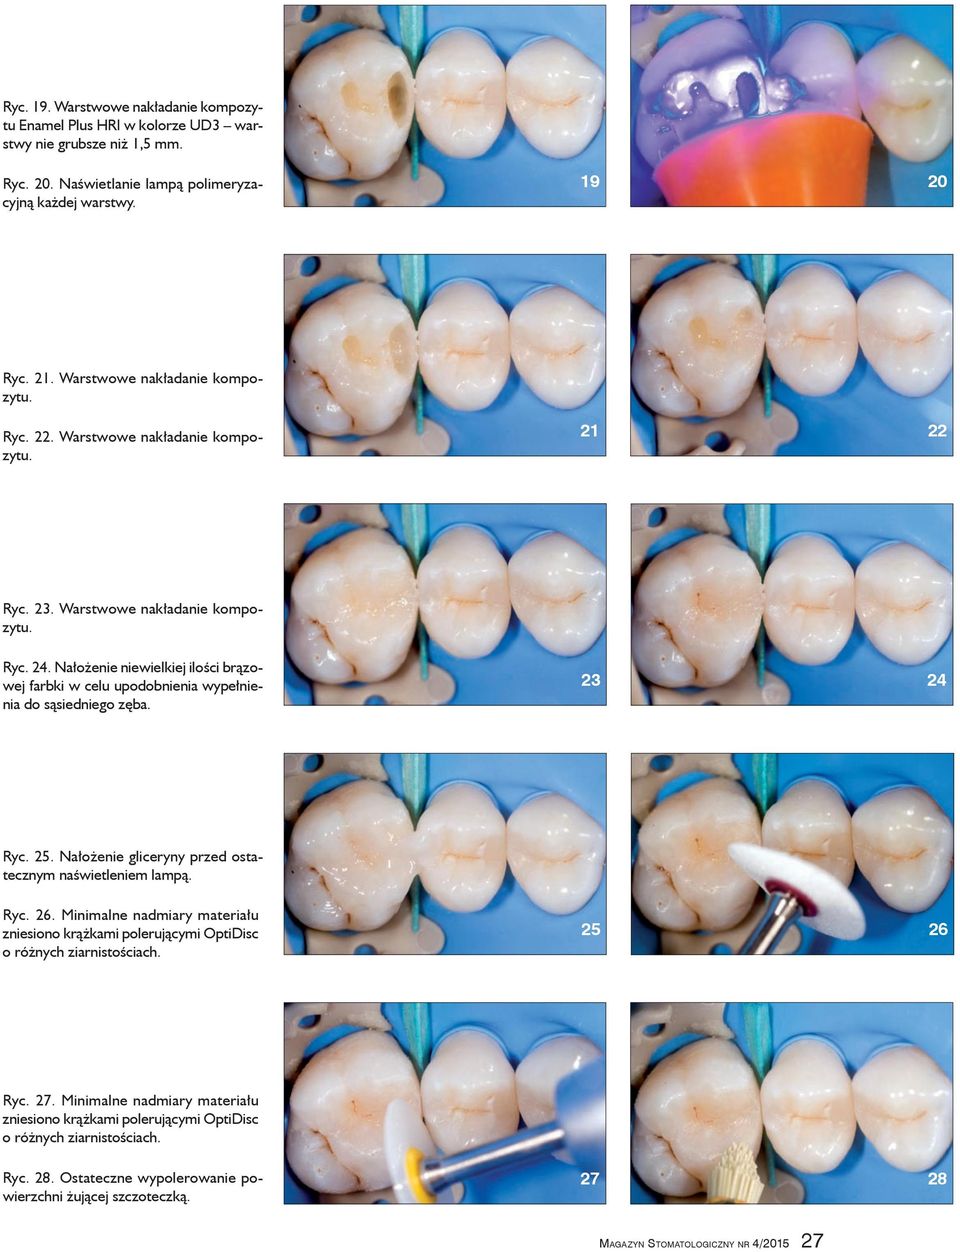 Nałożenie niewielkiej ilości brązowej farbki w celu upodobnienia wypełnienia do sąsiedniego zęba. 23 24 Ryc. 25. Nałożenie gliceryny przed ostatecznym naświetleniem lampą. Ryc. 26.